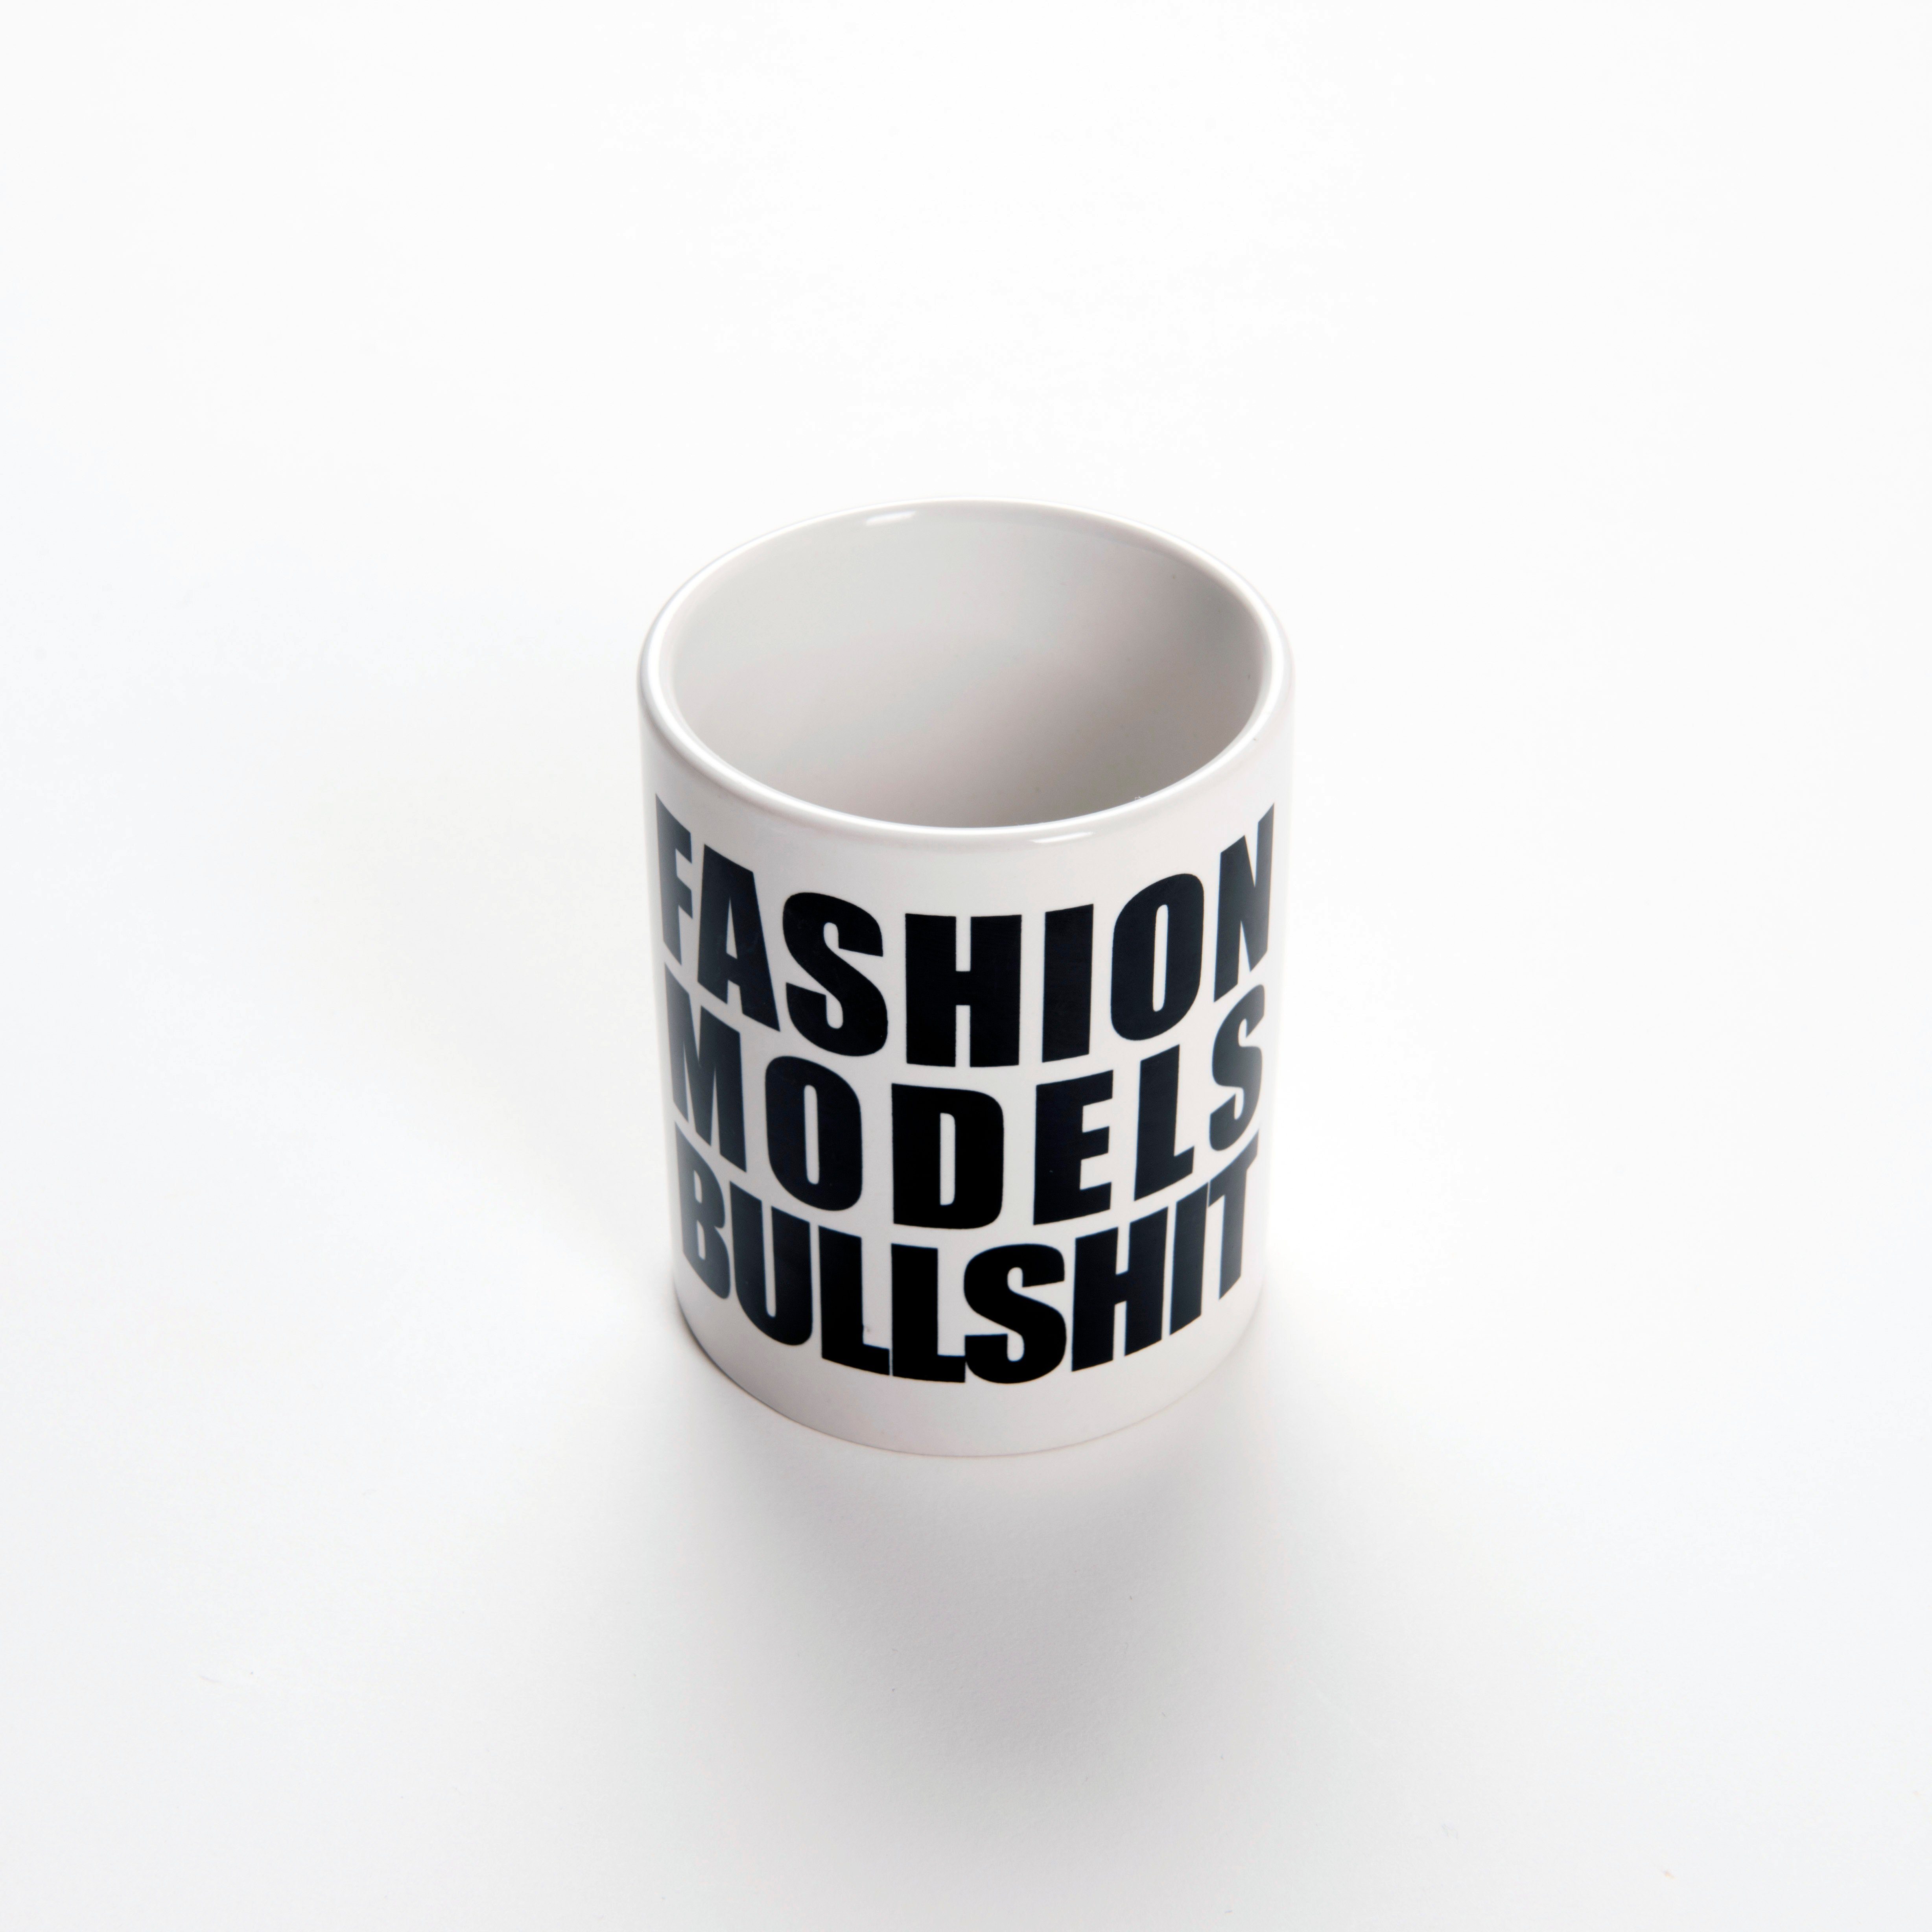 Chiccheria Brand Tasse Fashion Models Bullshit, mit Schrift schwarzer weiß